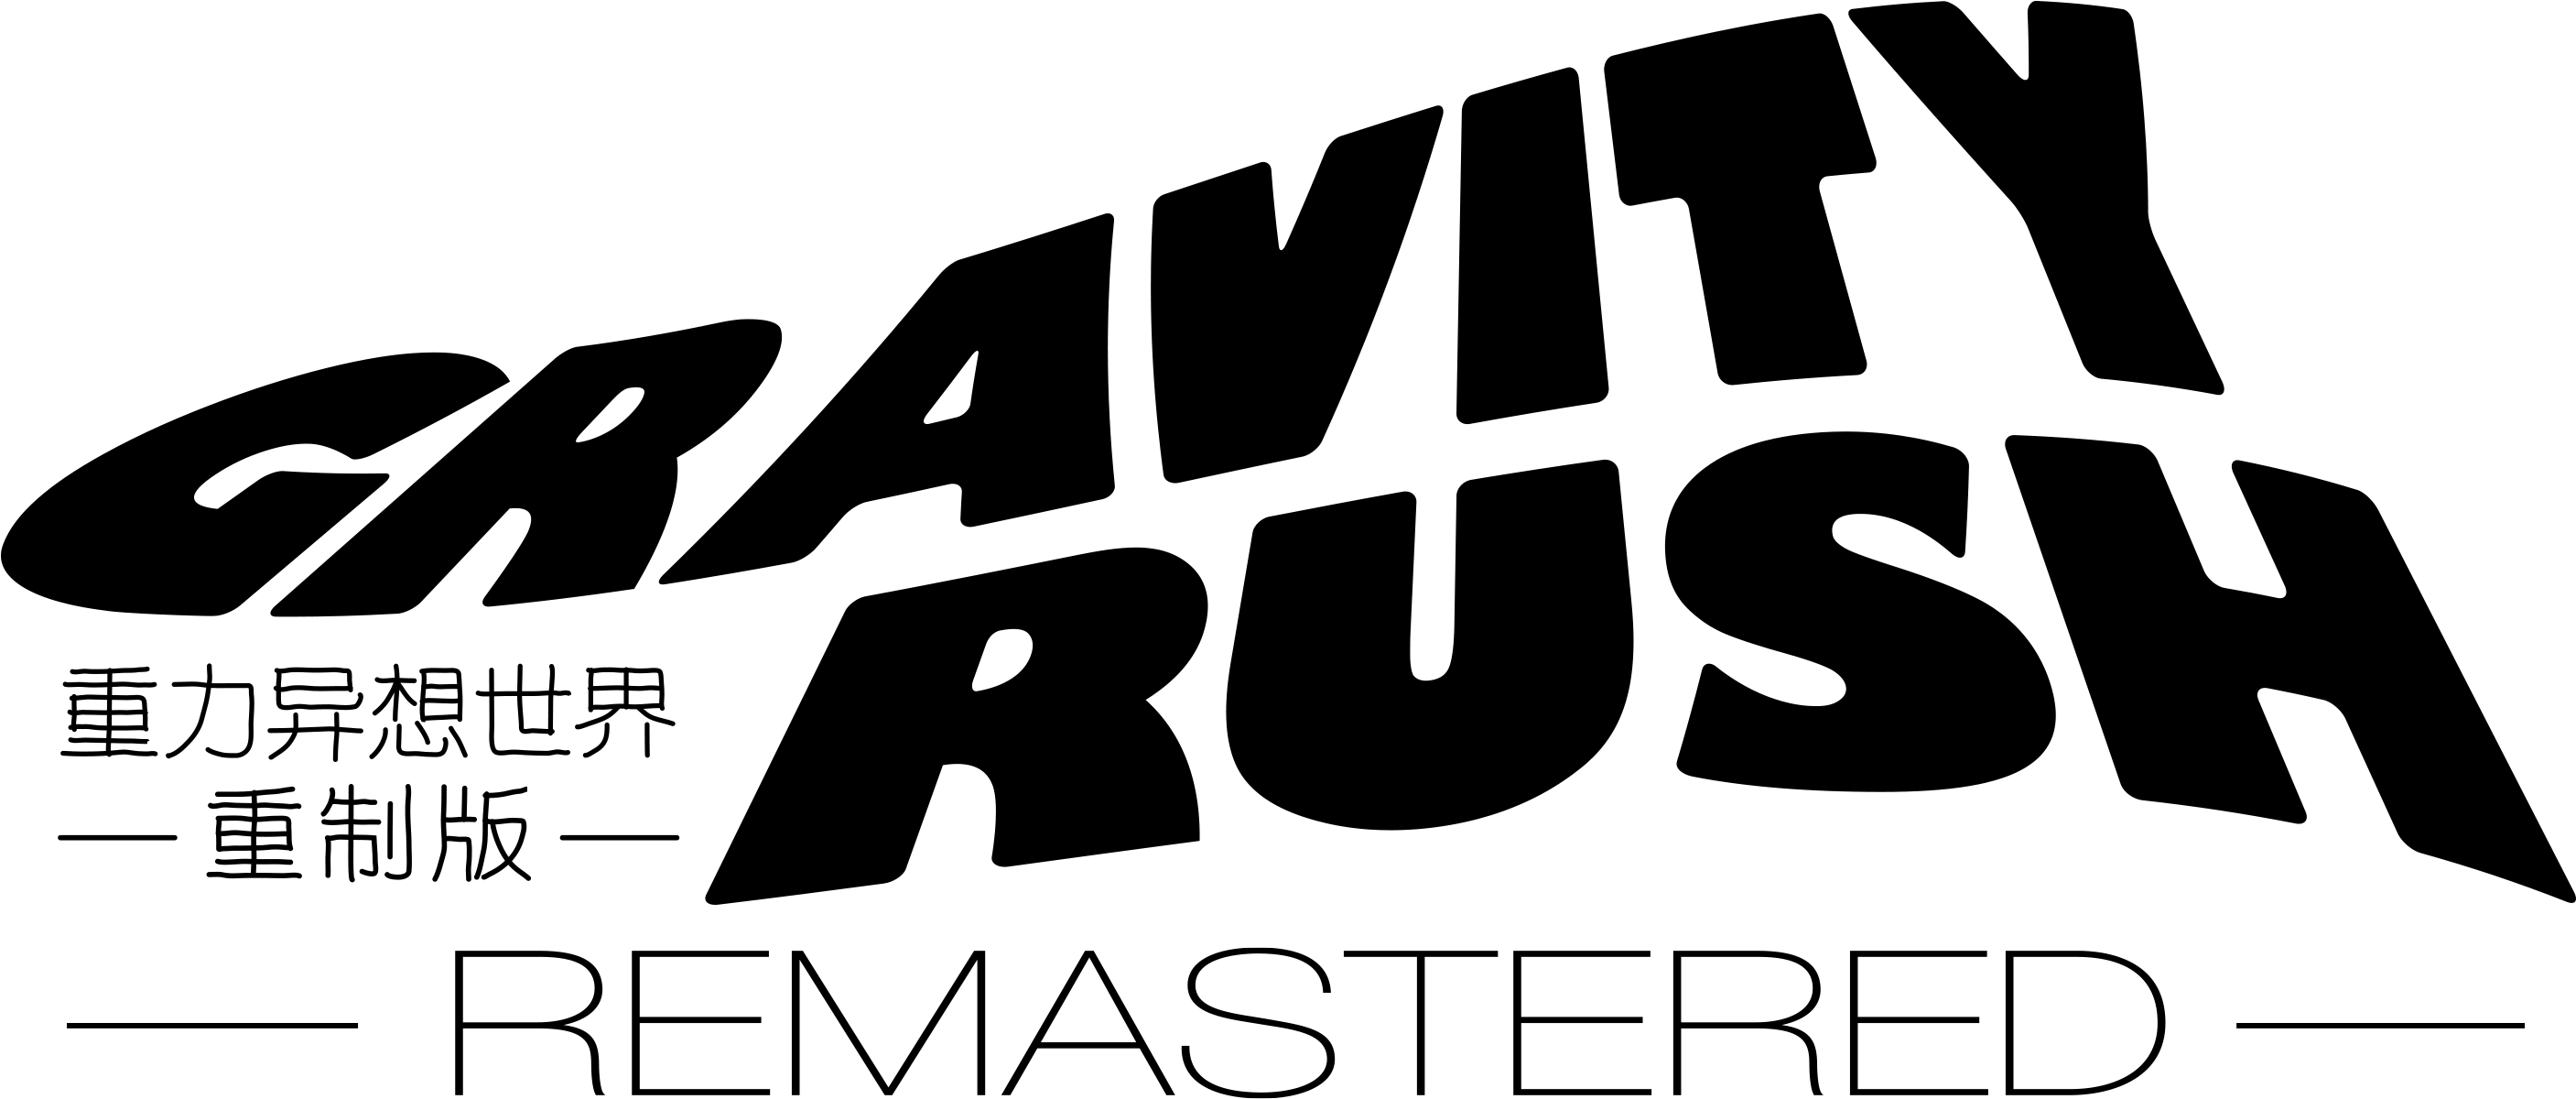 Gravity Rush Logo PNG HD Quality